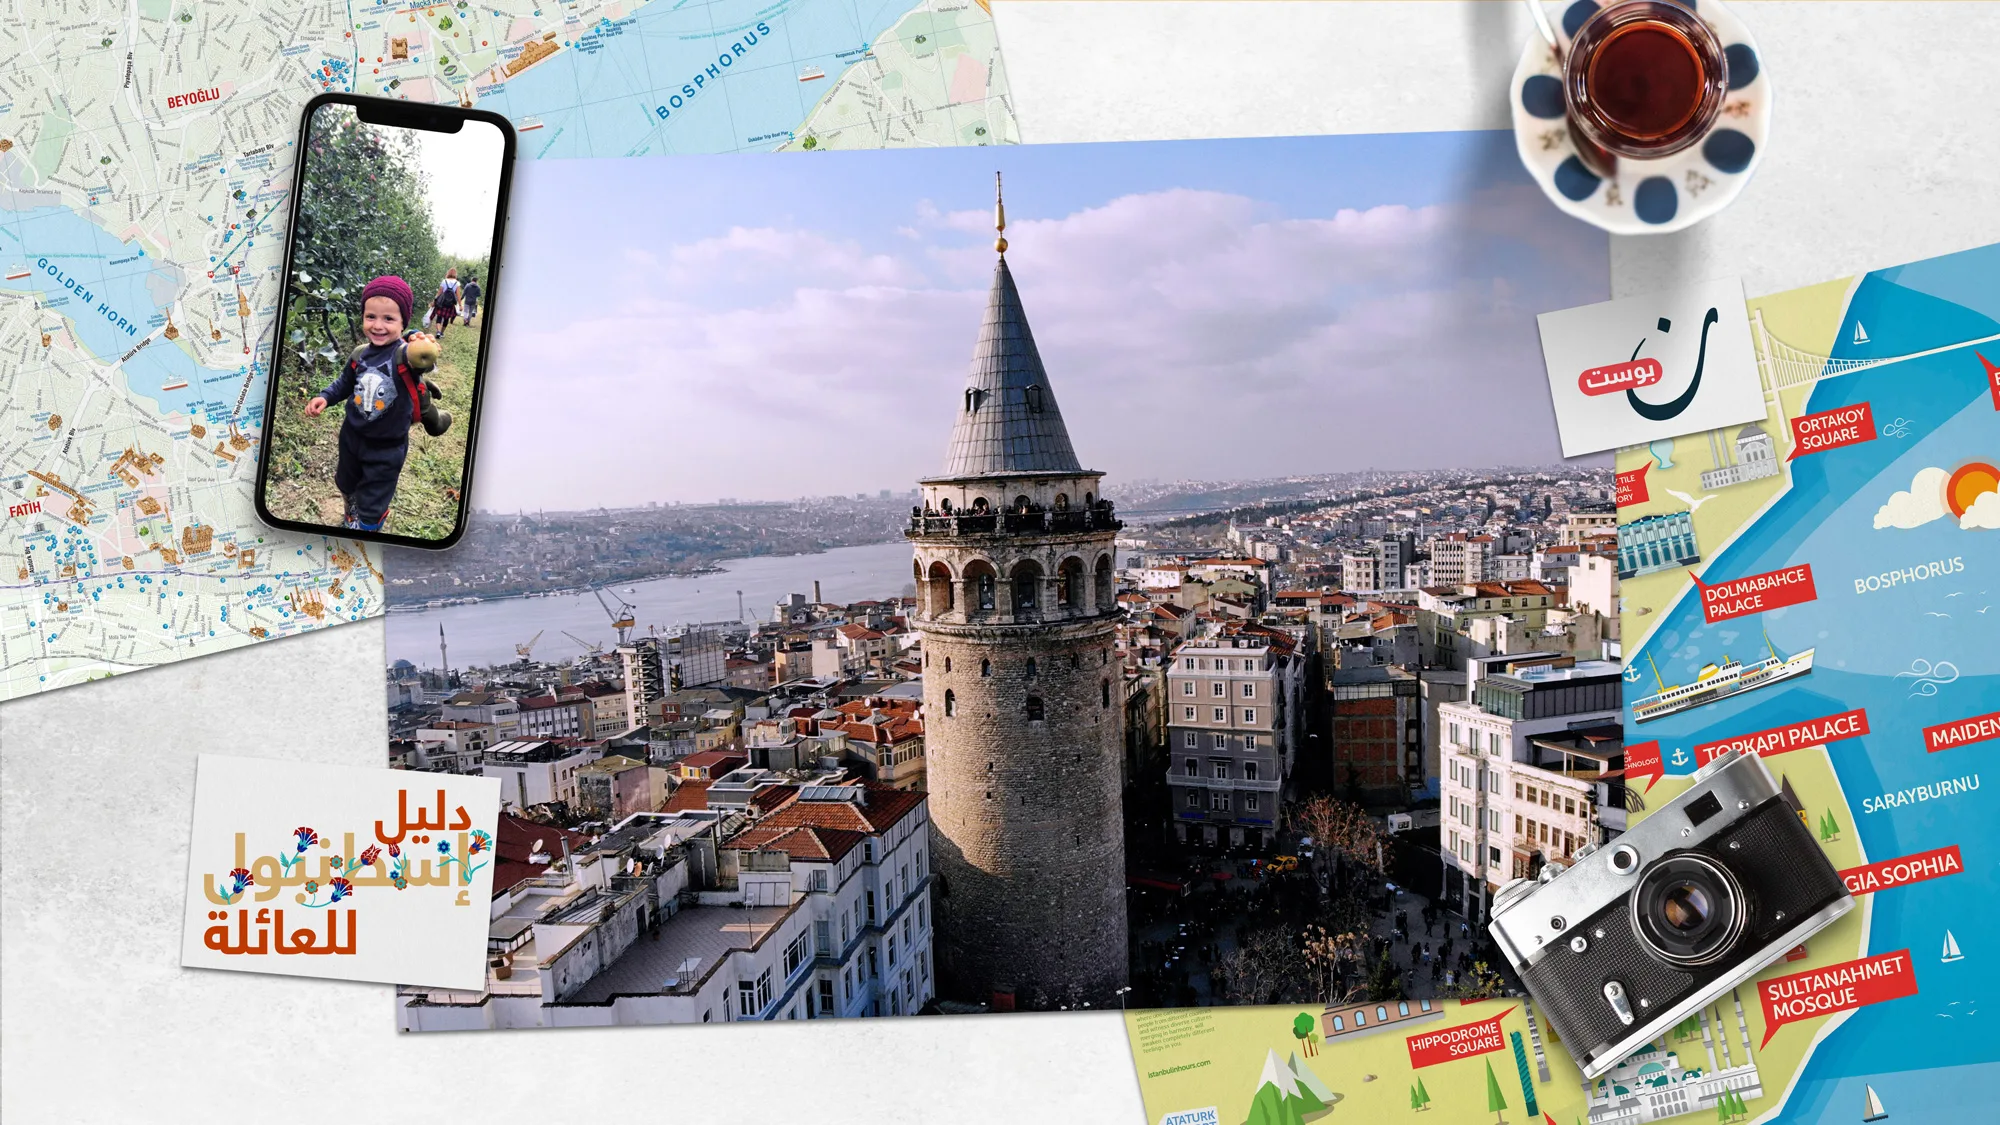 دليل-إسطنبول-للعائلة-اصنع-ذكريات-أطفالك-وعش-معهم-تجارب-اسطنبولية